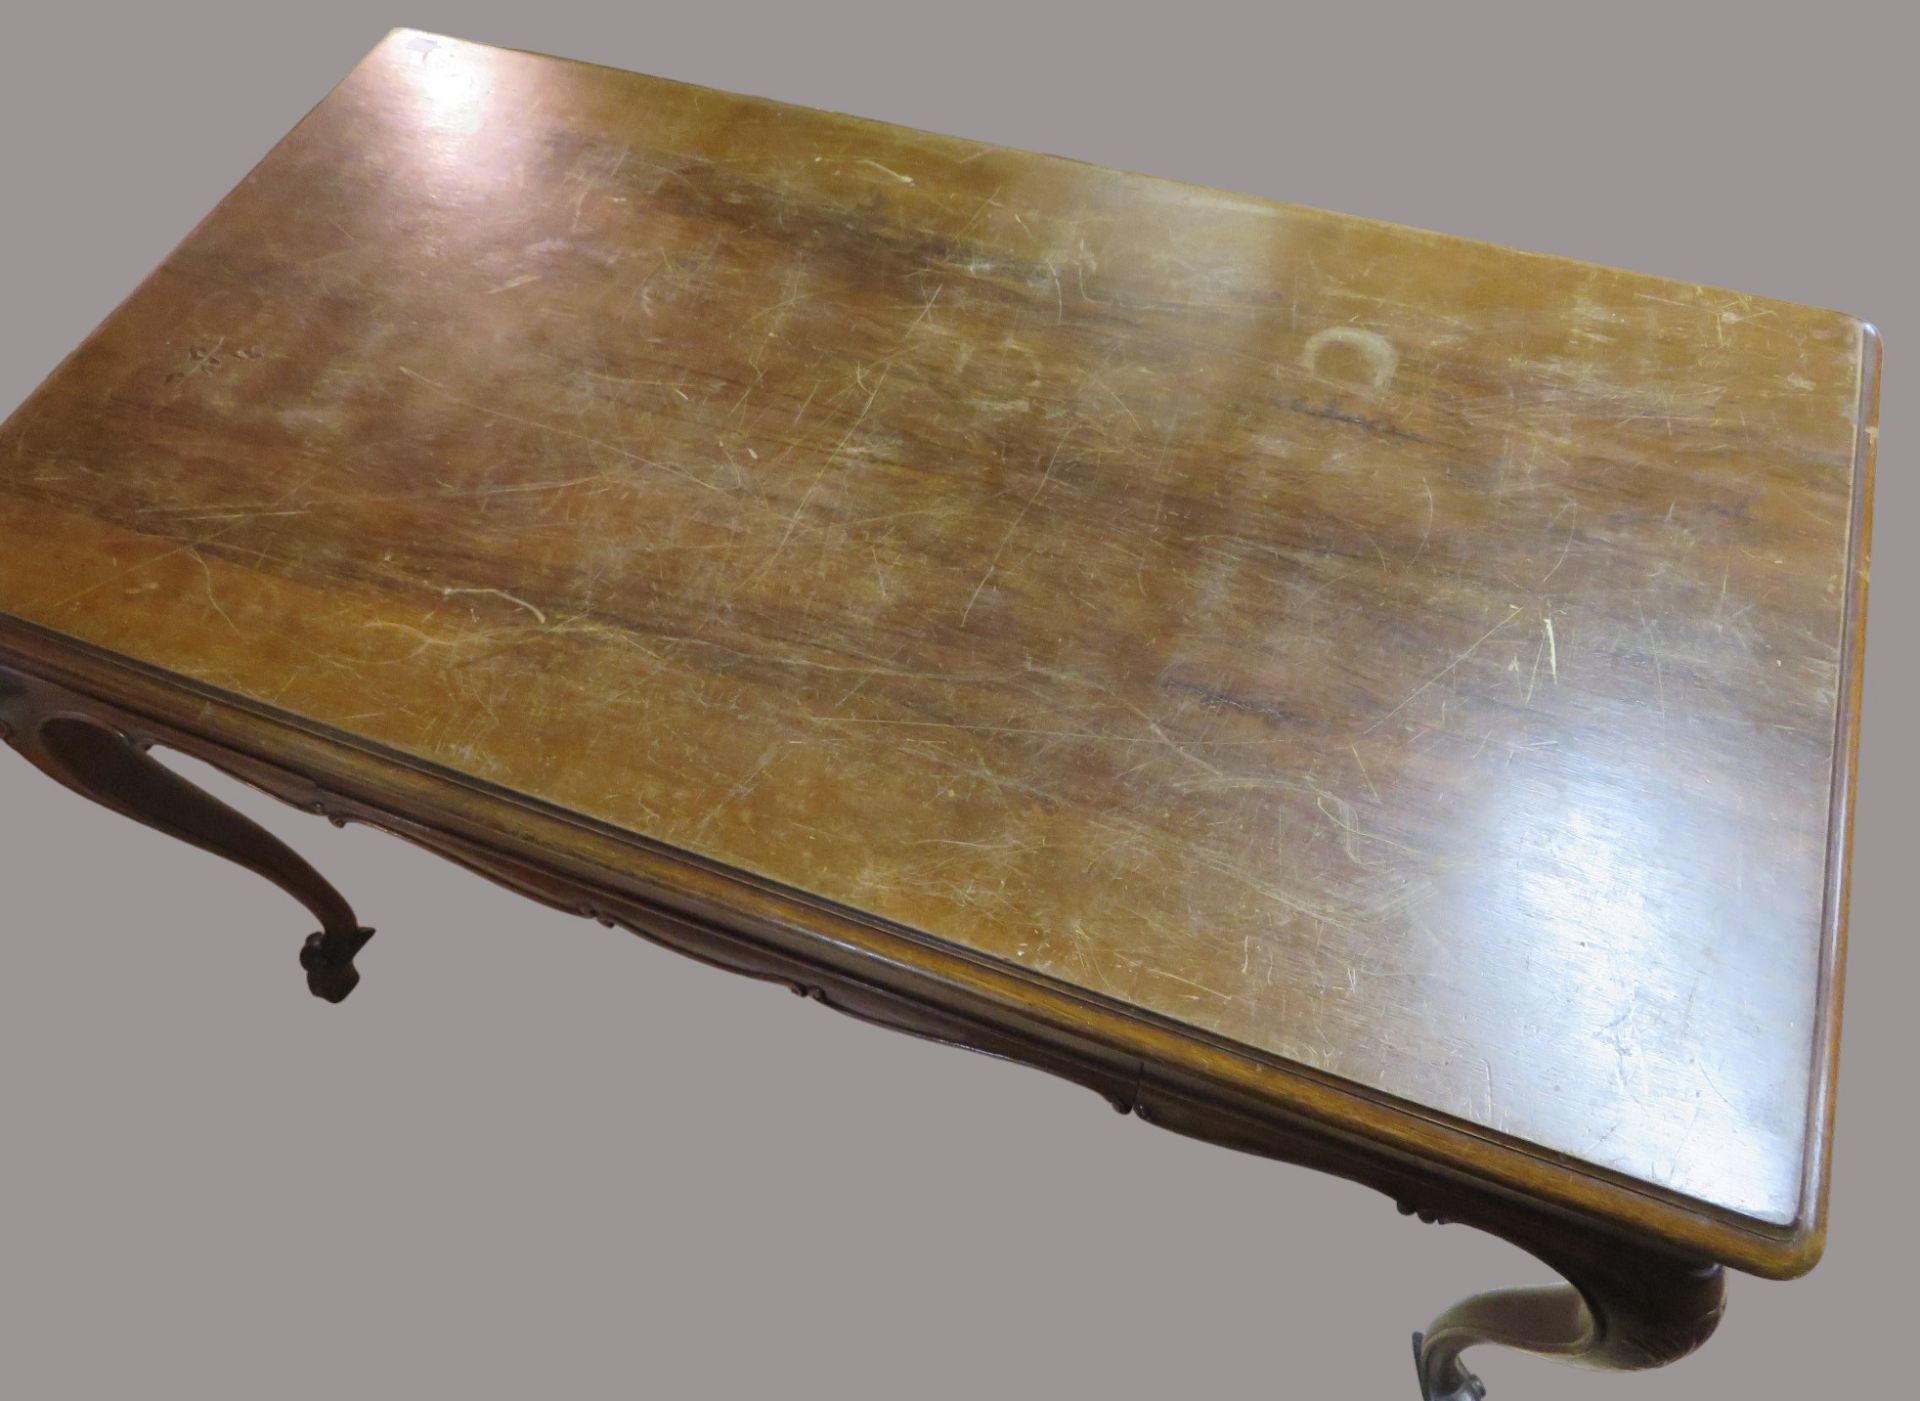 Schreibtisch, Barockstil, Nussbaum geschnitzt, 2-schübig, rest.bed., 76 x 119 x 68 cm. - Bild 2 aus 2